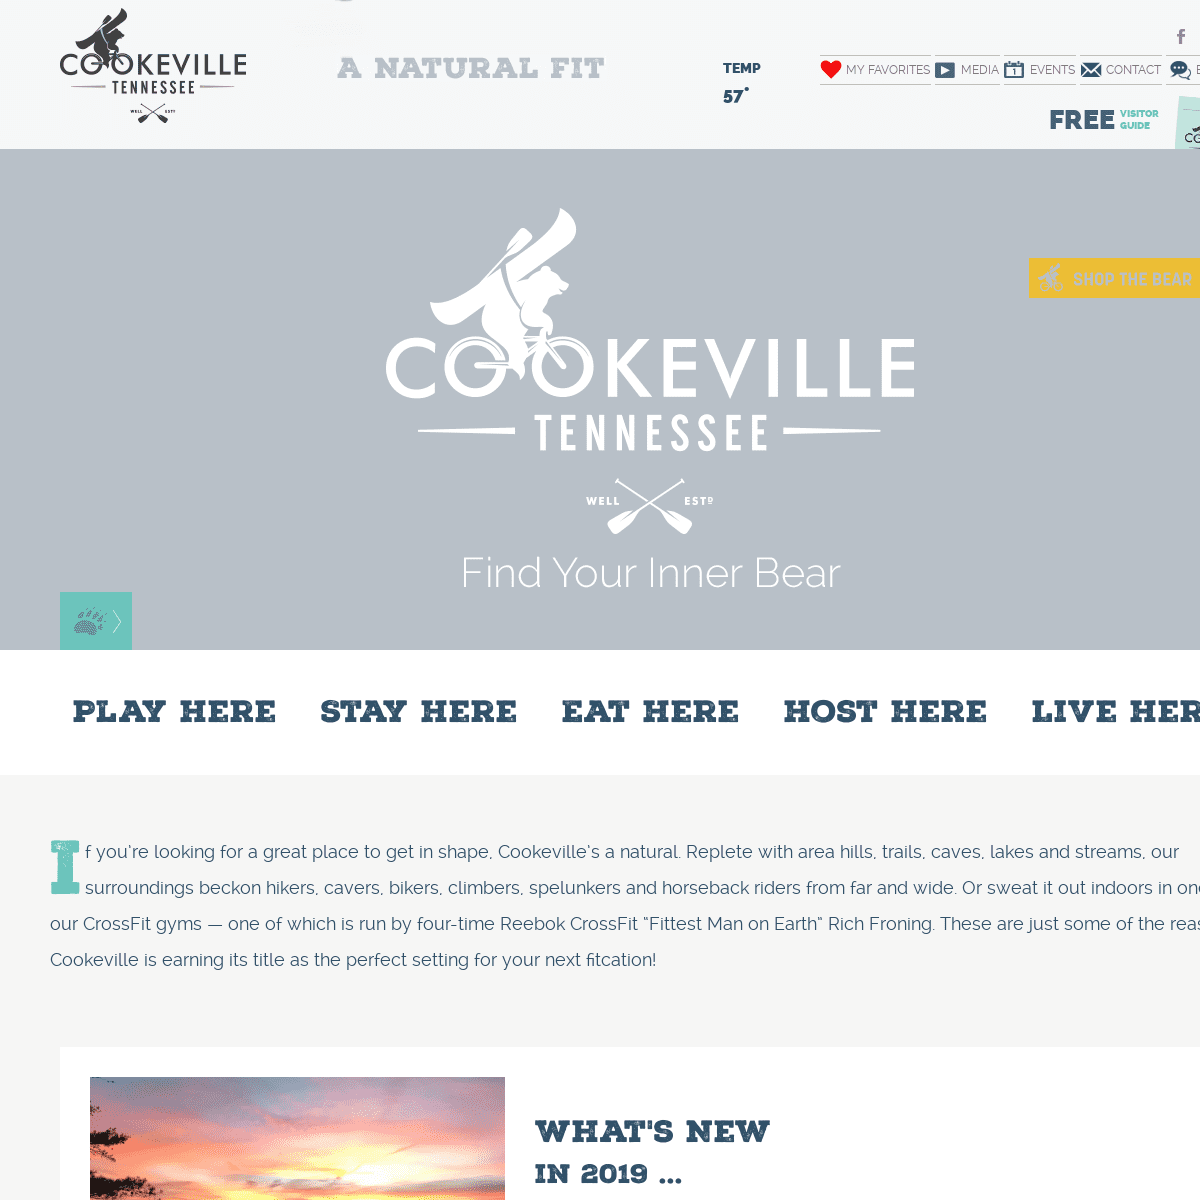 A complete backup of visitcookevilletn.com